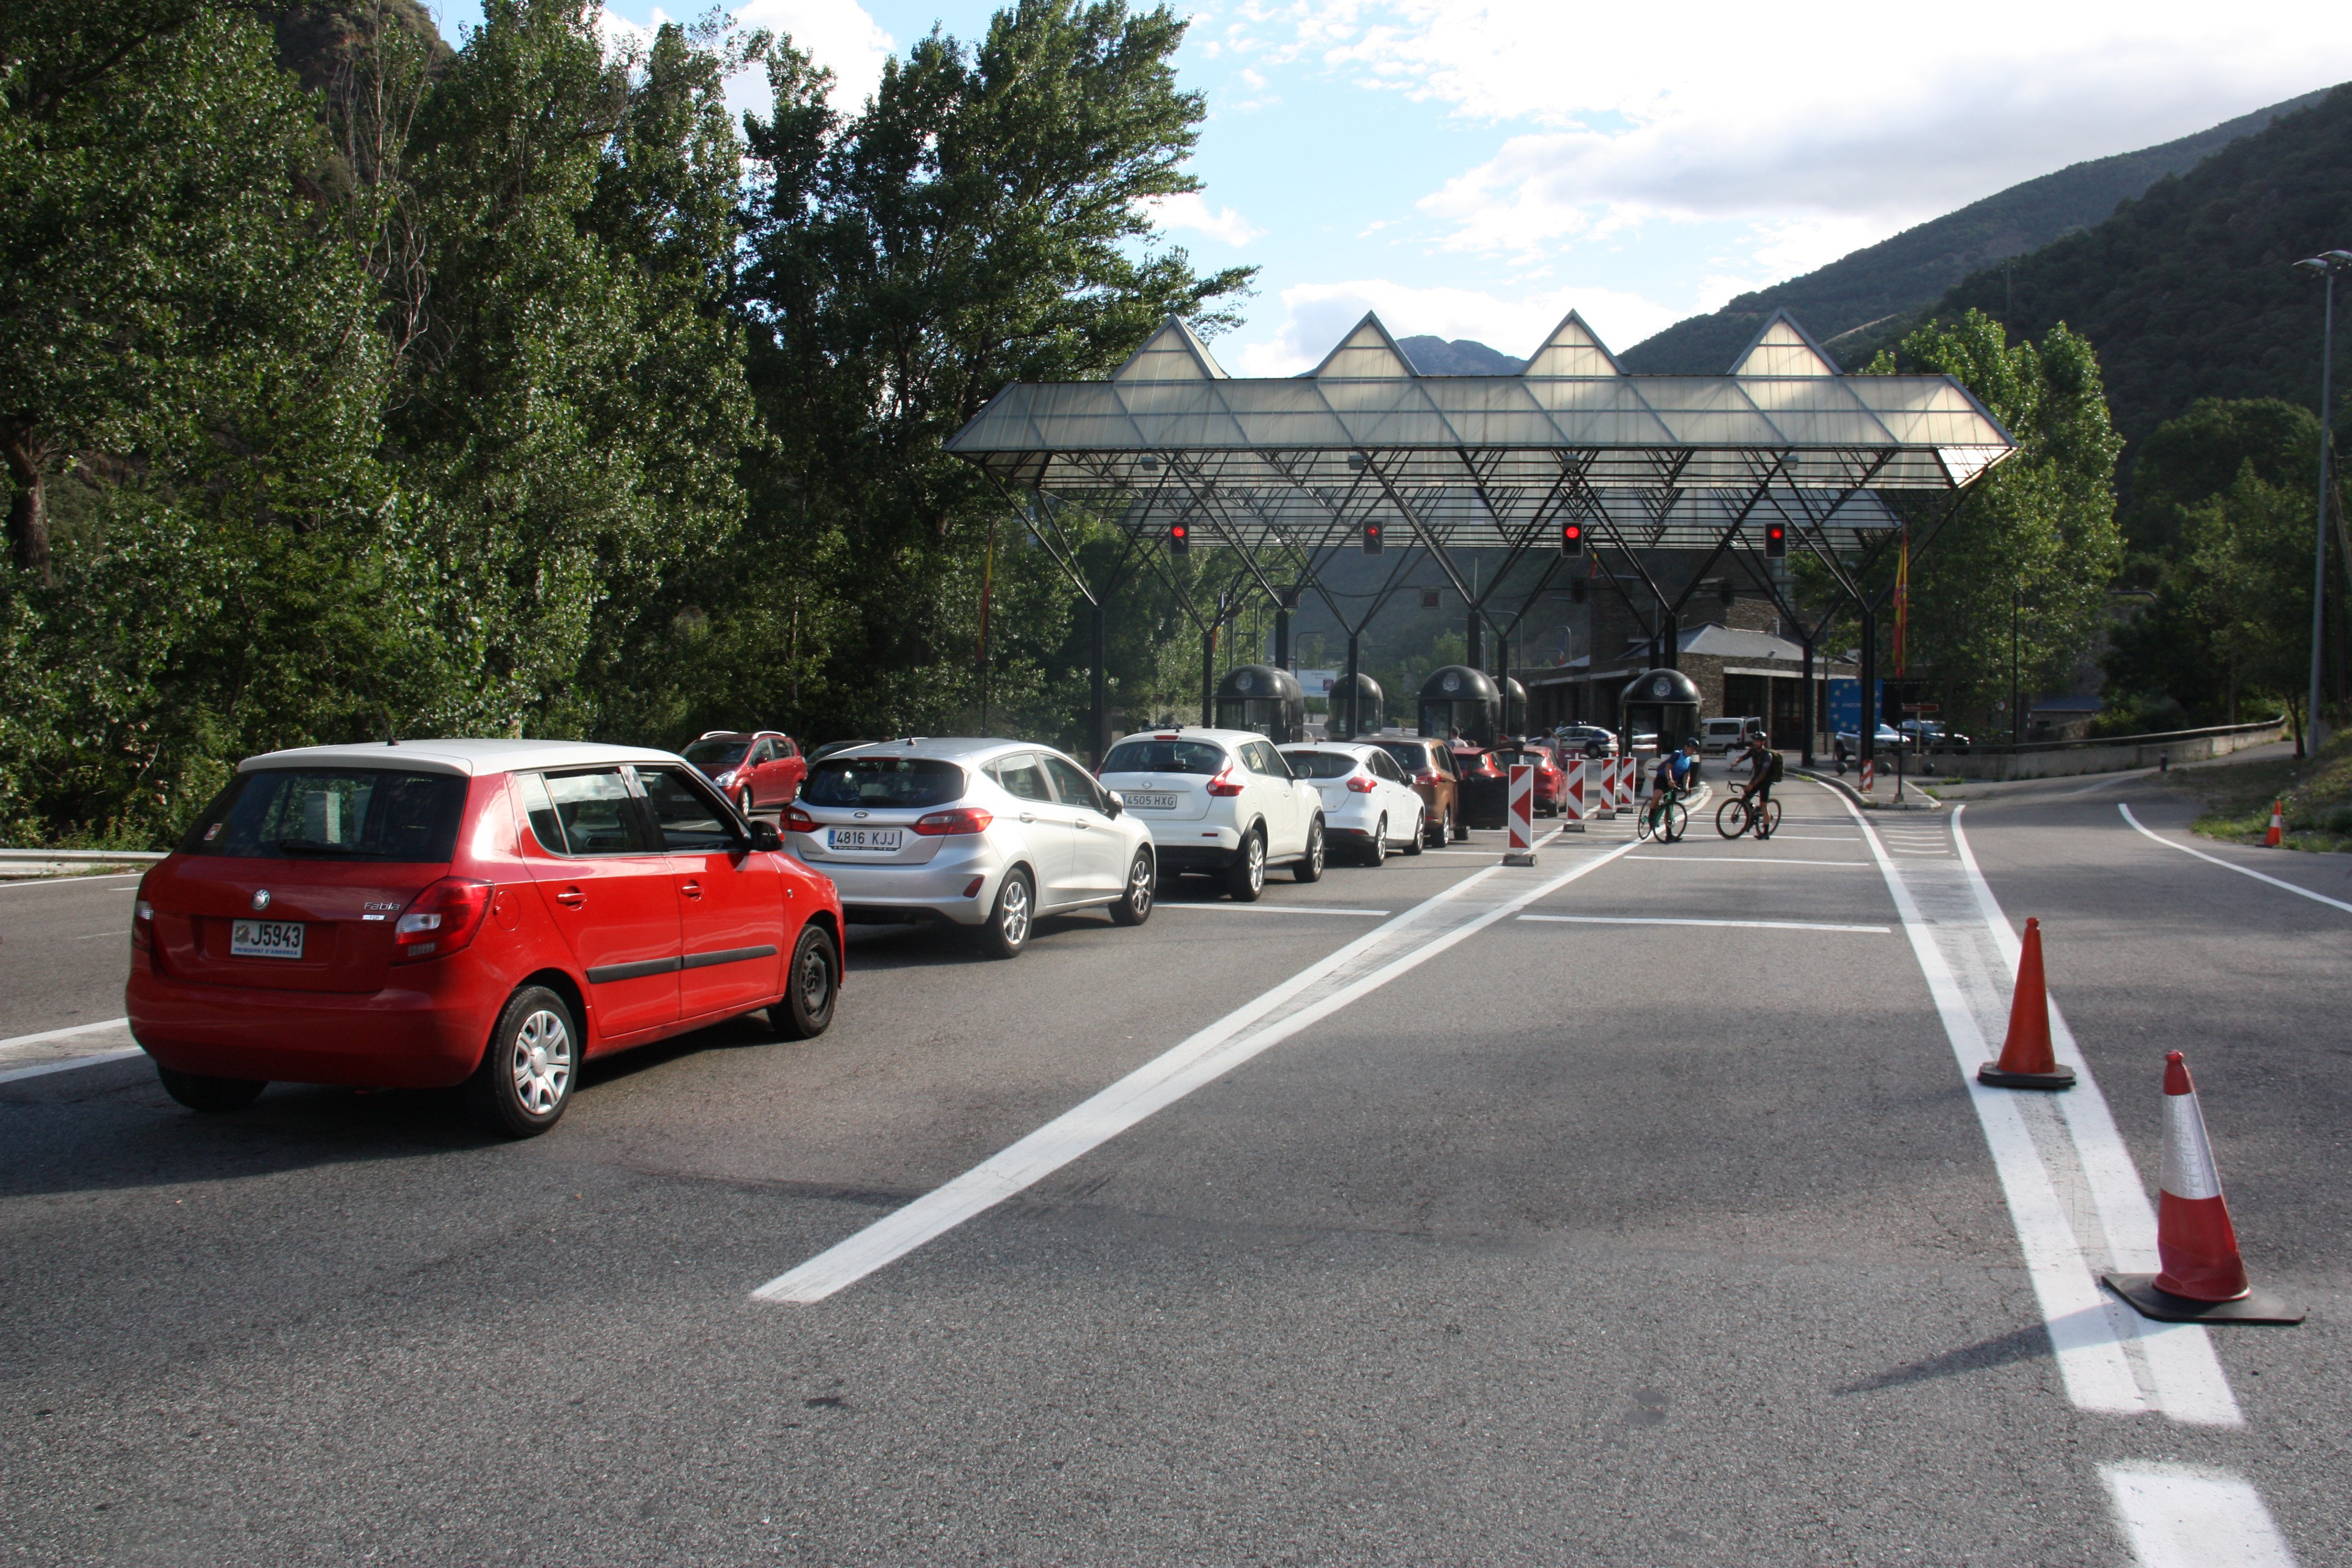 Transporte sanitario y mini buses ya circulan por la carretera de acceso a Andorra